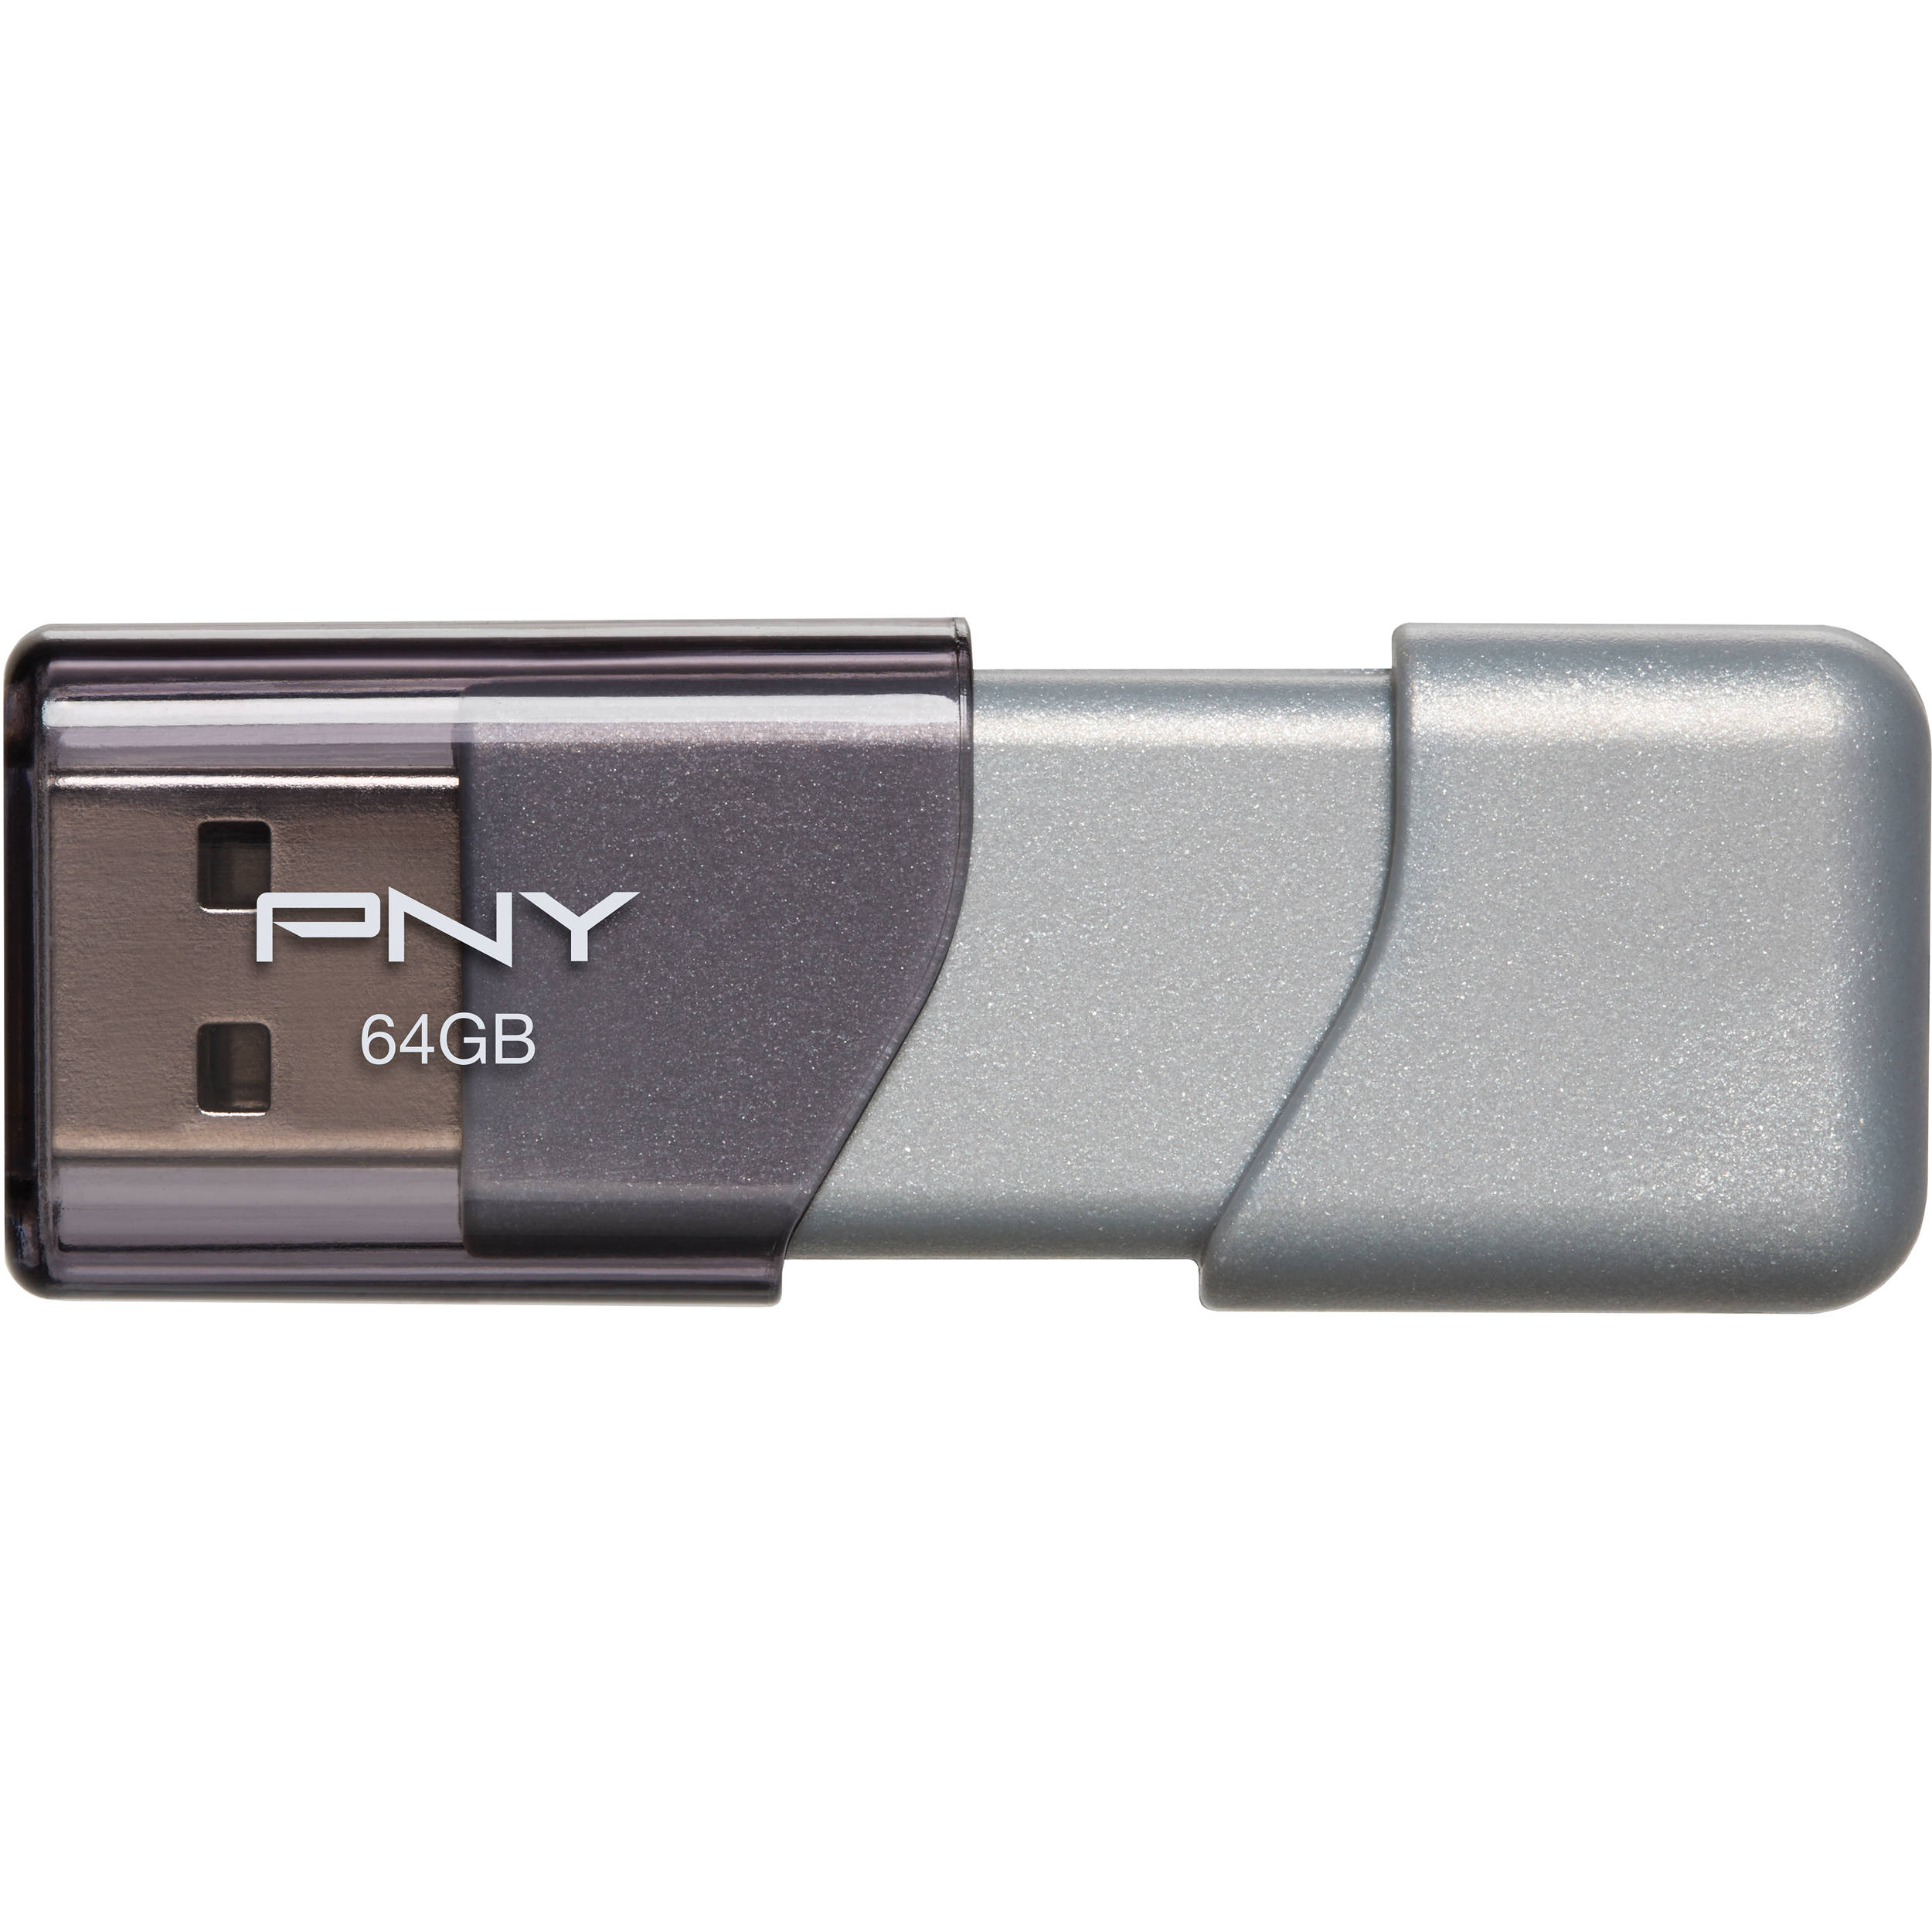 pny 64 gb thumb drive